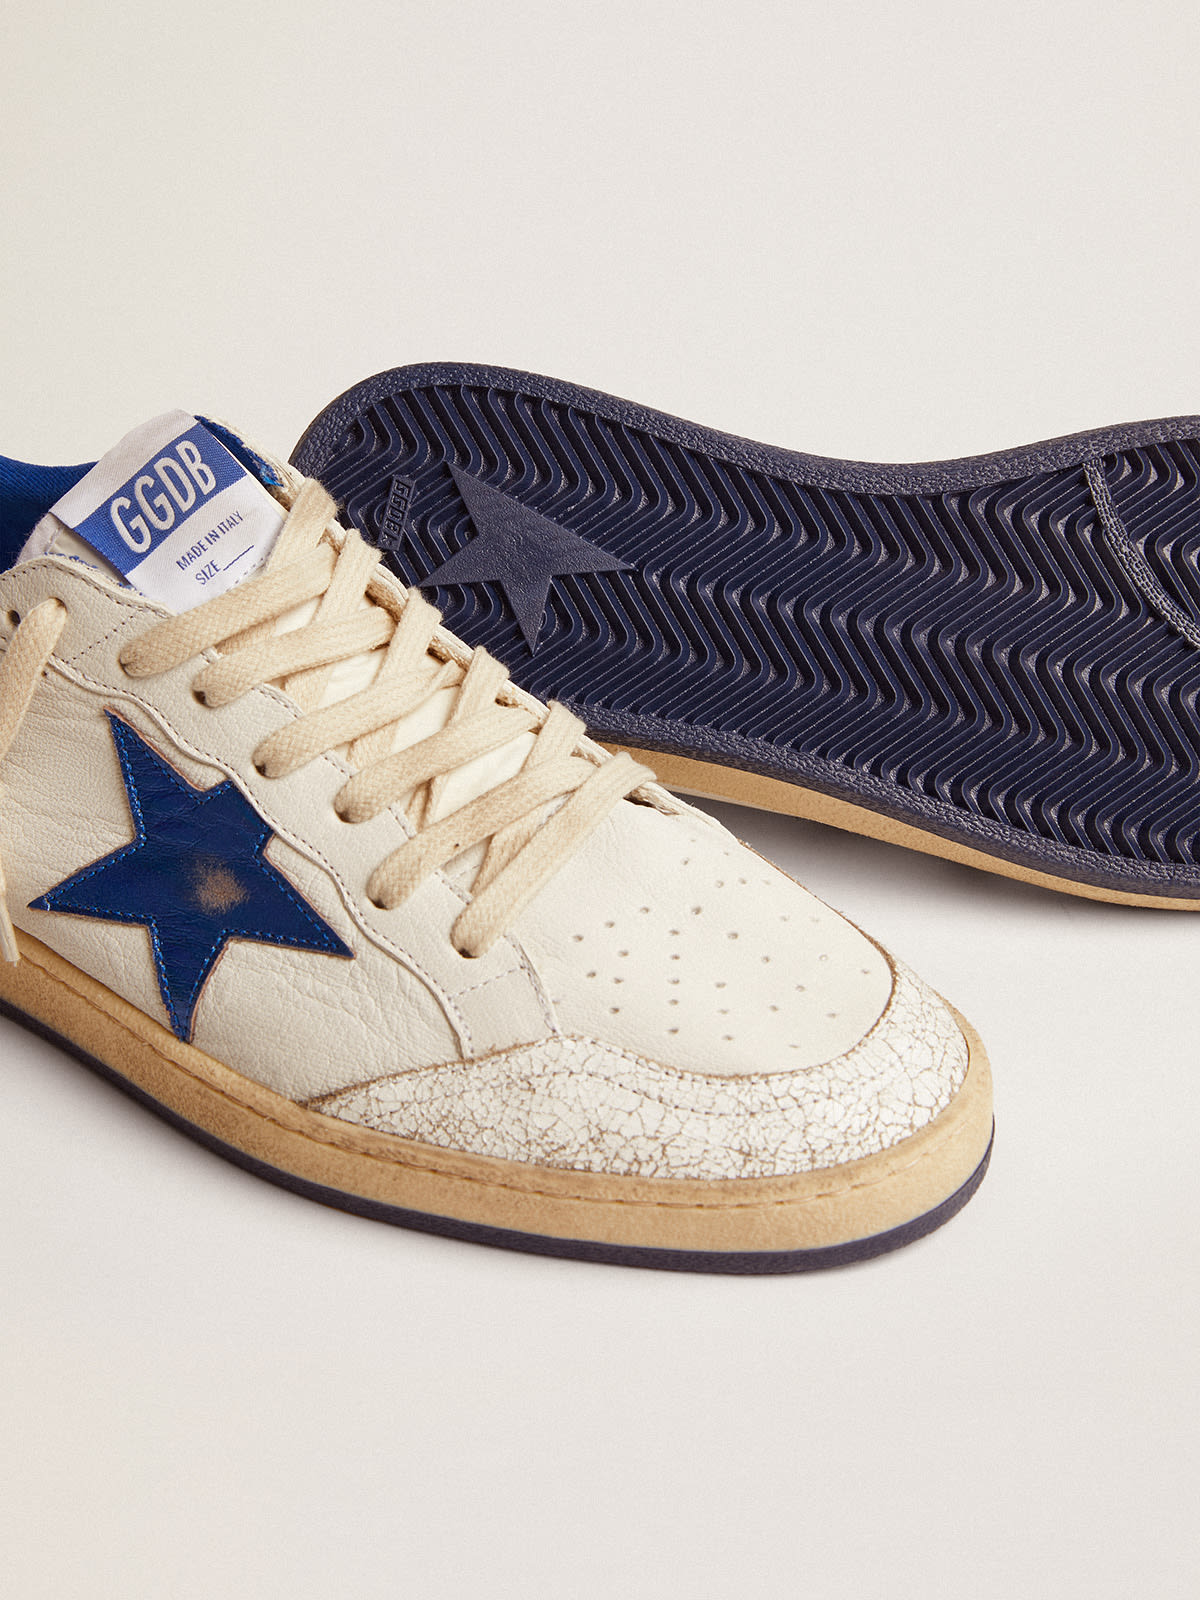 Golden Goose - Sneakers Ball Star en cuir nappa blanc avec étoile et contrefort en cuir lamé bleuet in 